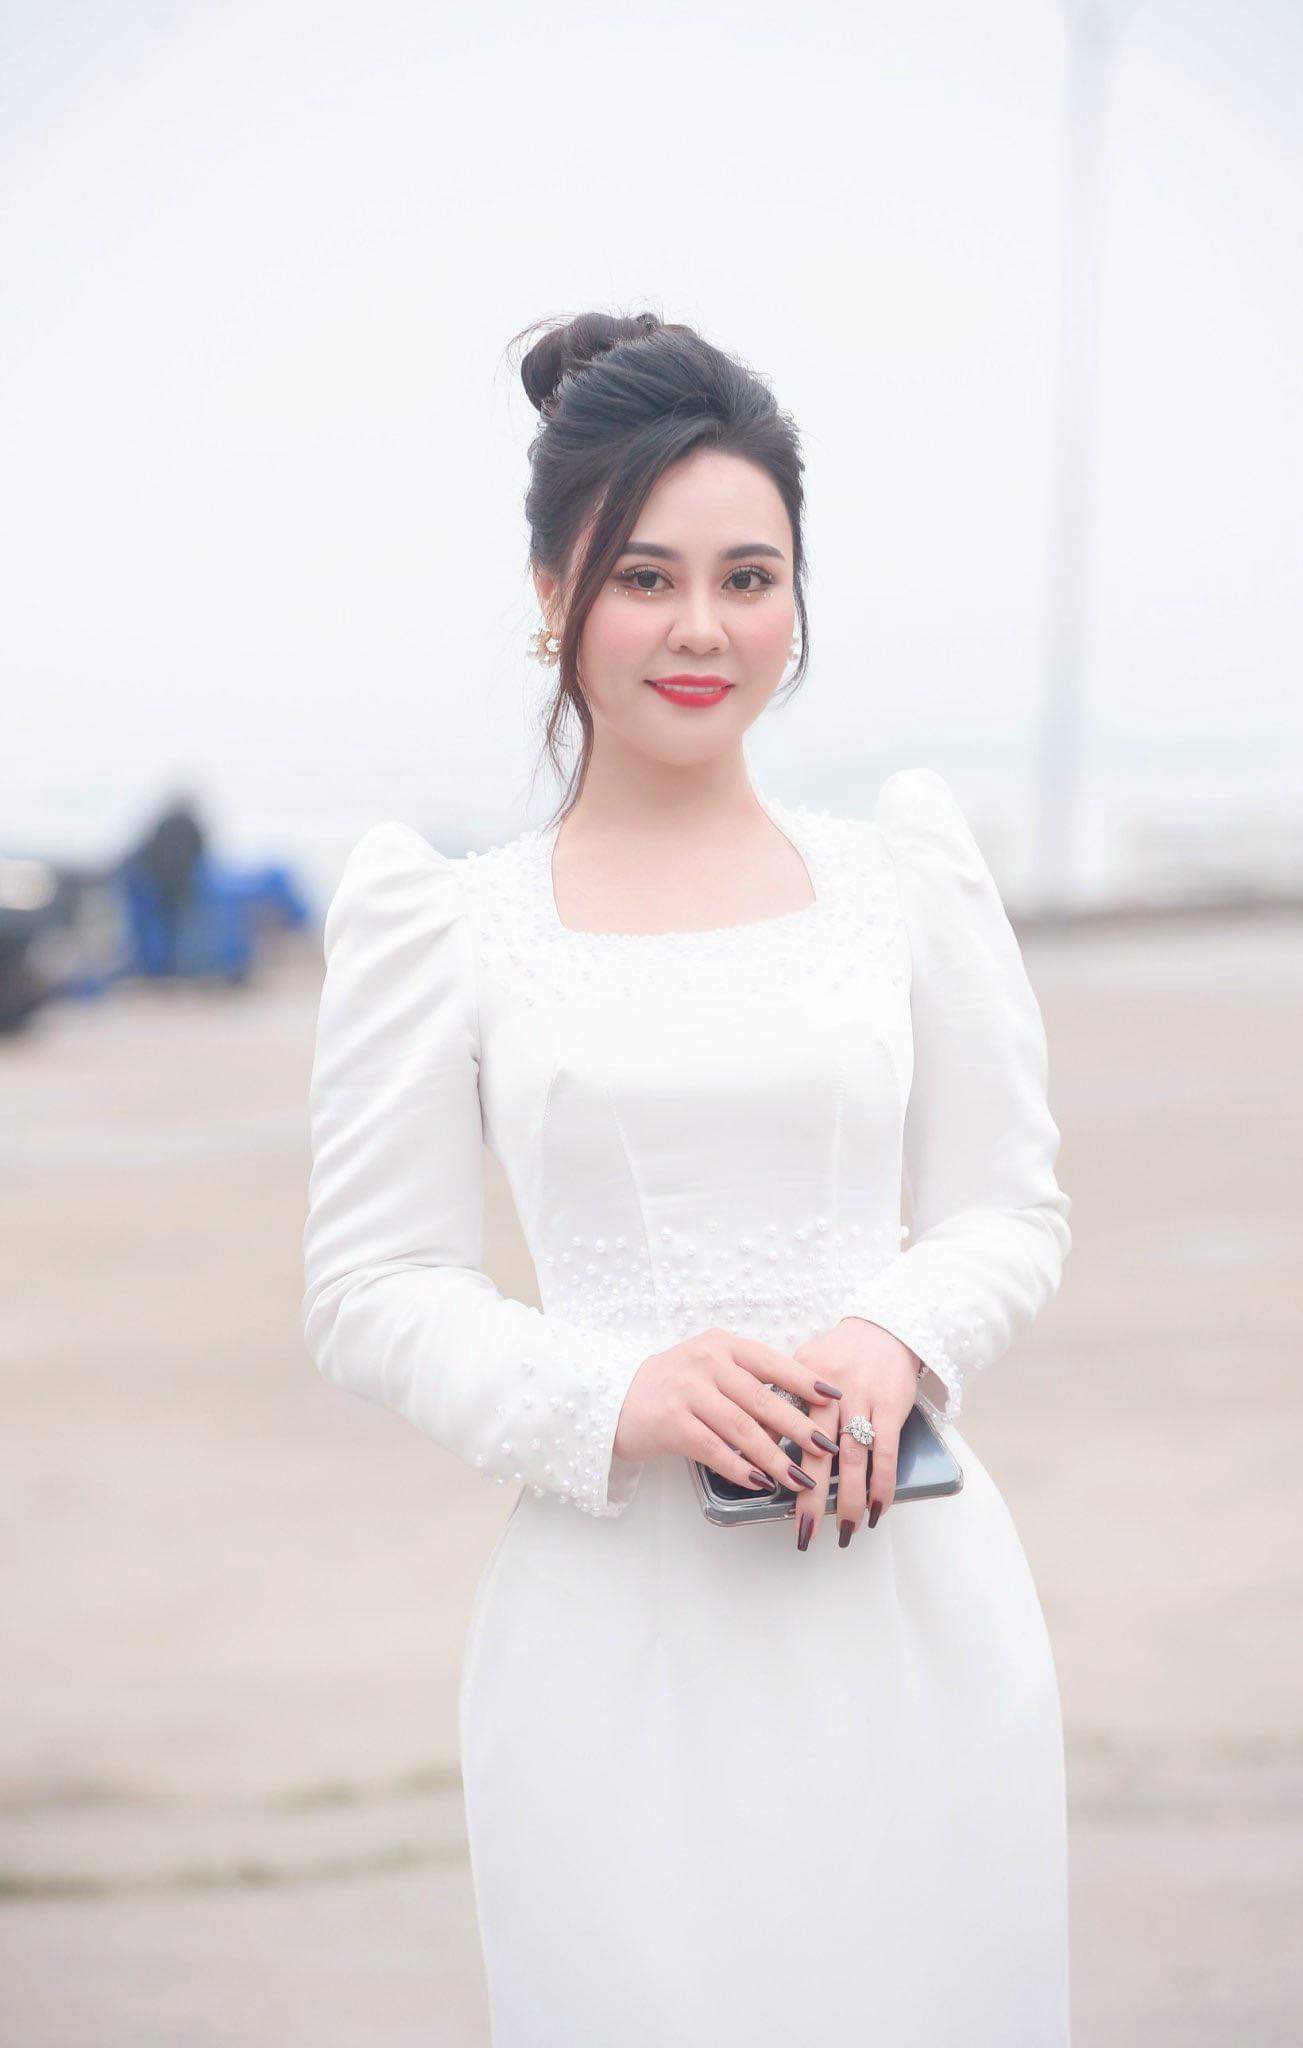 Hoa hậu Phan Kim Oanh dùng hết tiền cát xê để từ thiện - Ảnh 1.